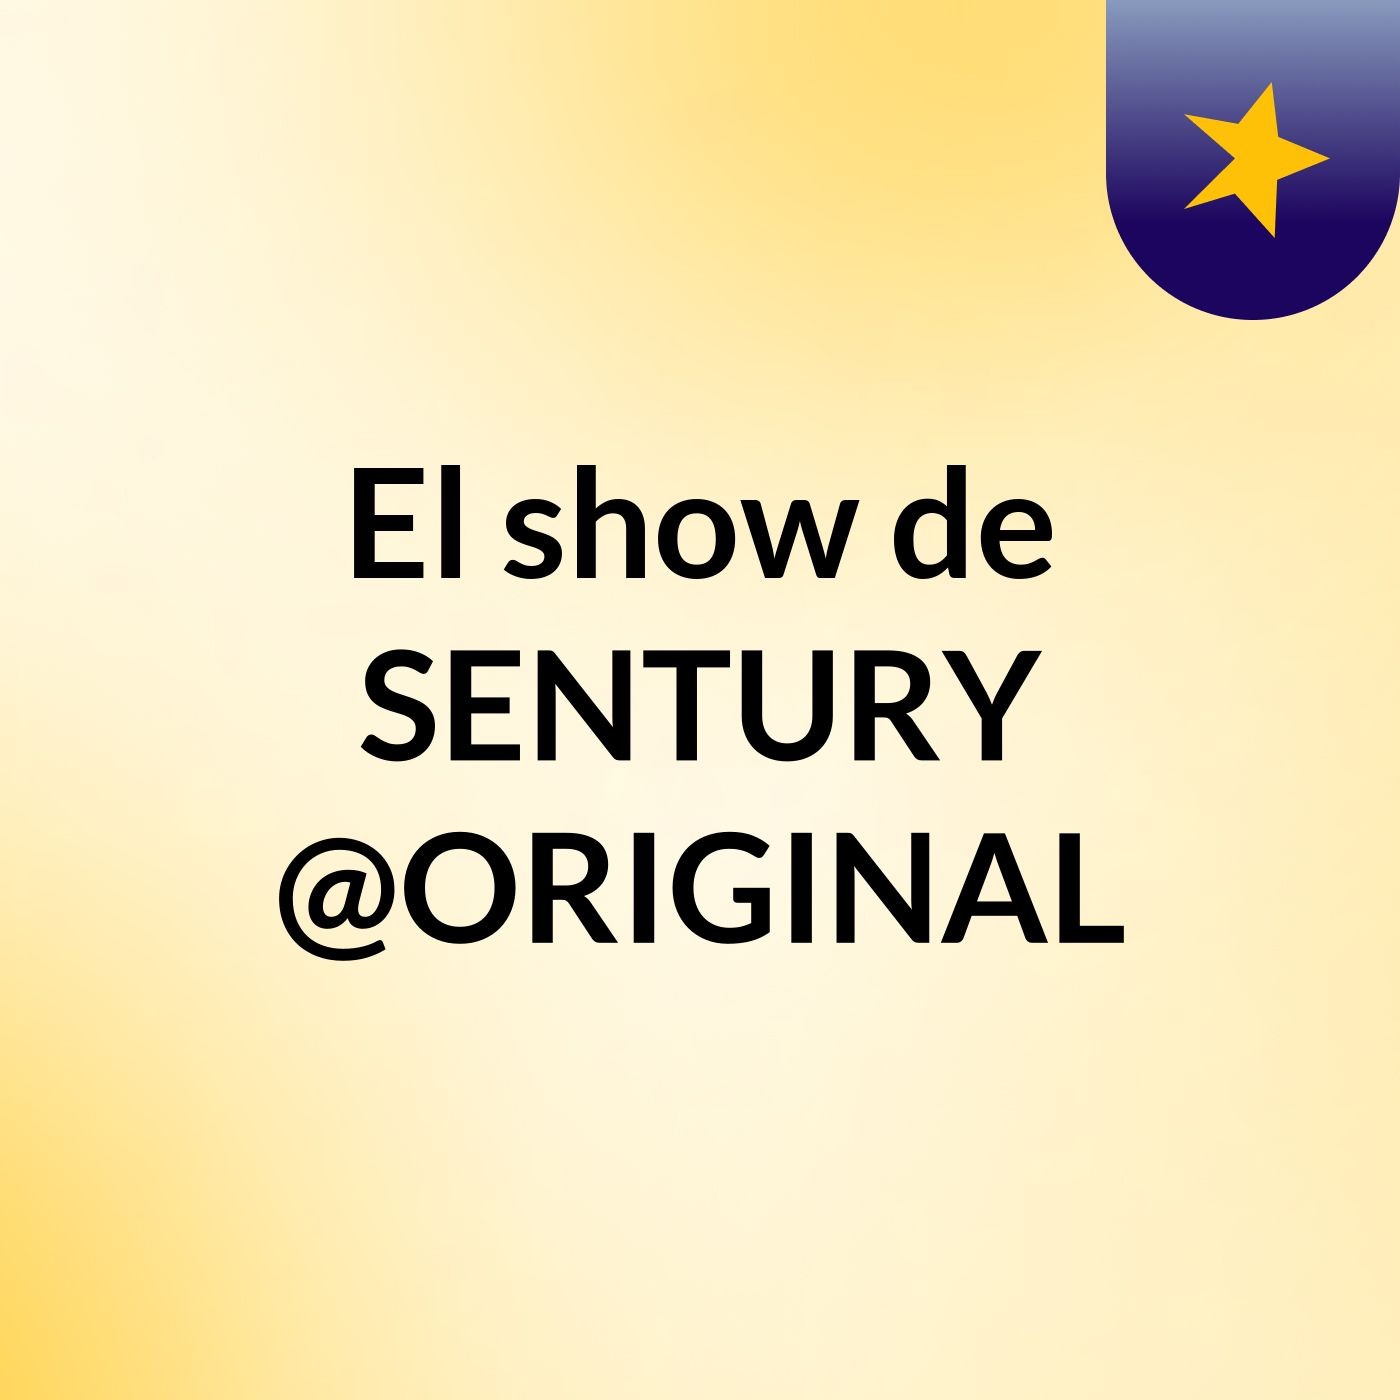 El show de SENTURY @ORIGINAL